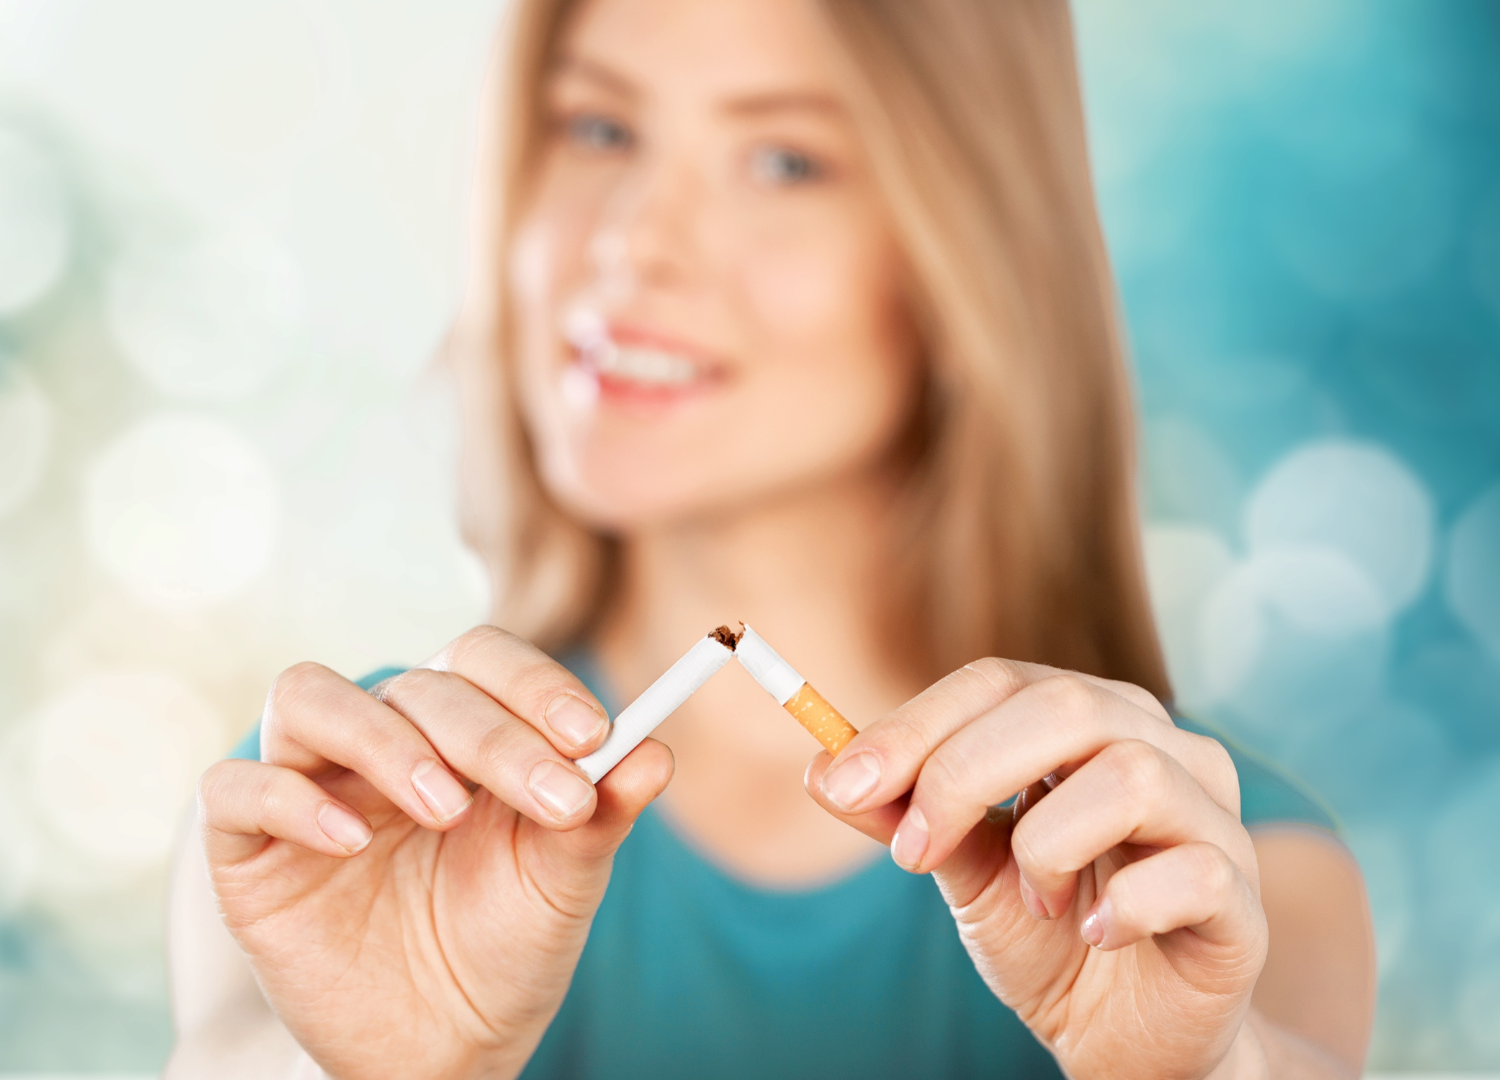 EMC - Esthetic Medical-Dental Corporation - Higiene Oral em Fumadores: Enfrentando o Desafio do Tabagismo